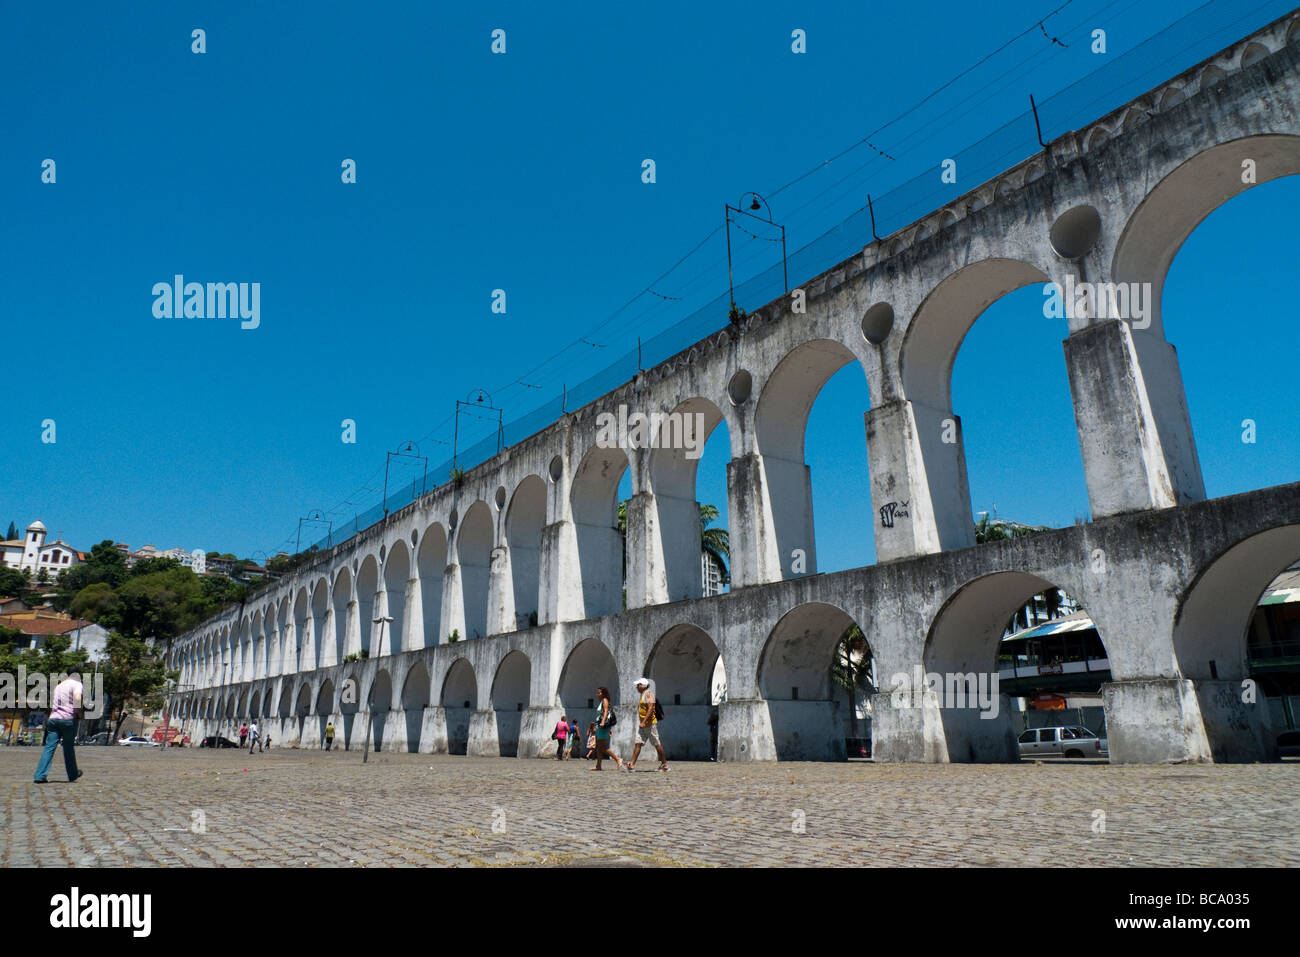 A photograph of the tram bridge in Rio de Janiero, Brazil Stock Photo